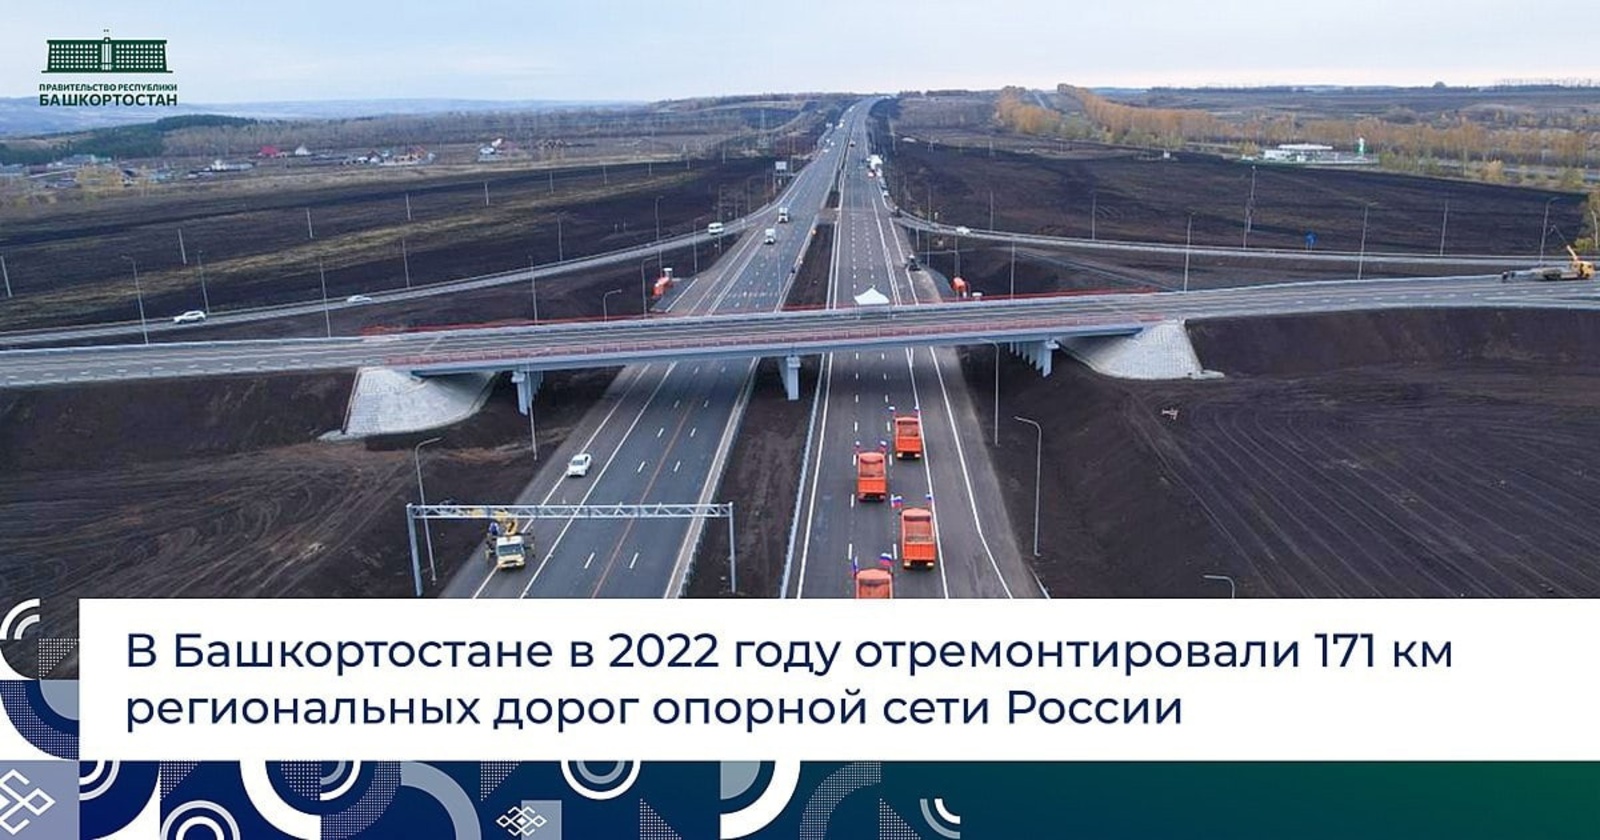 В 2022 году в Башкортостане отремонтировали 171 км региональных дорог, входящих в опорную дорожную сеть России